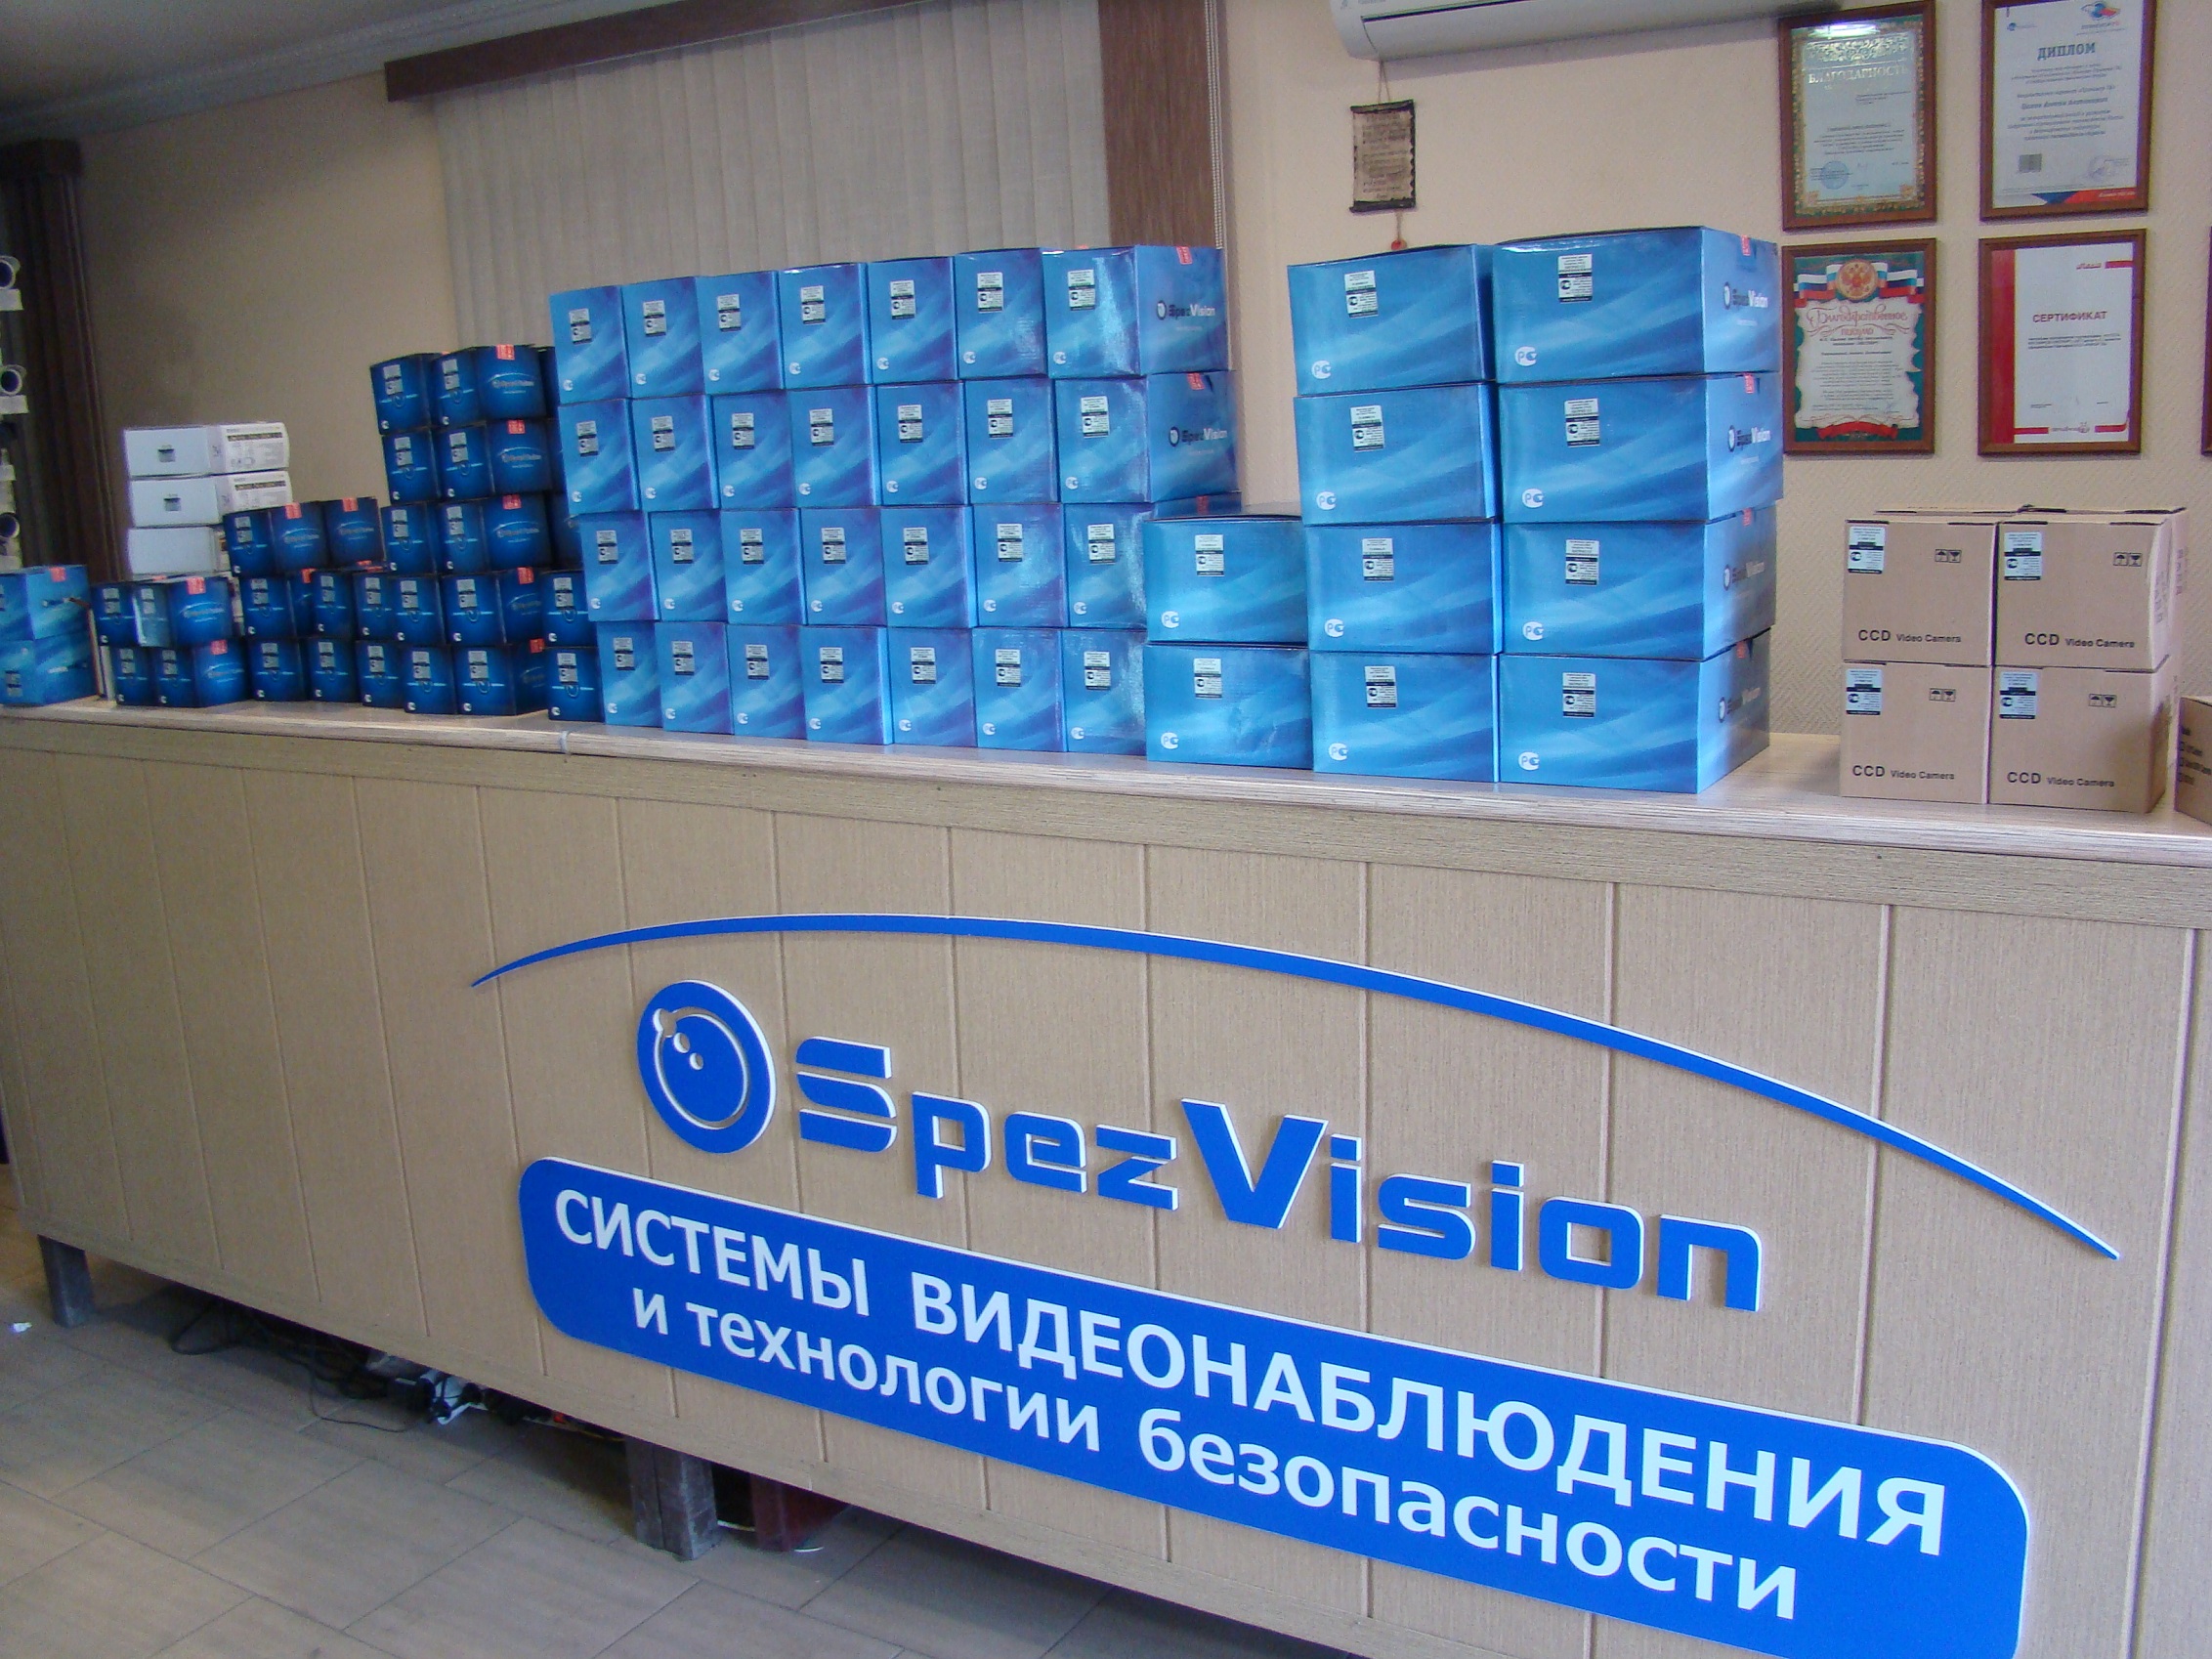 компания Spezvision – производство систем видеонаблюдения